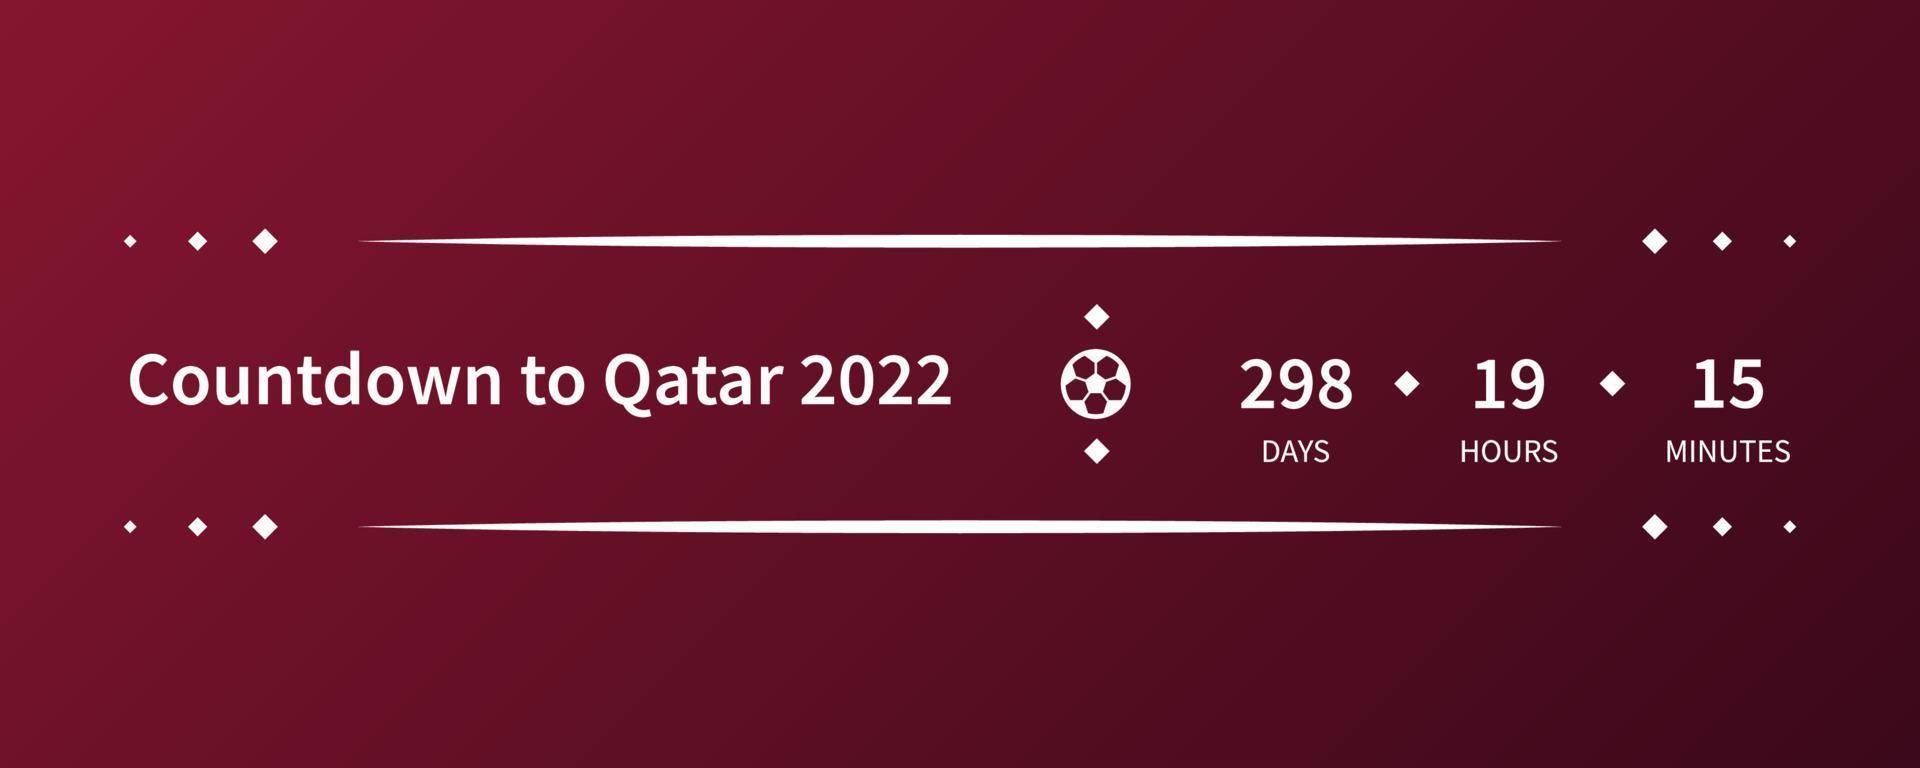 fond de tournoi de football qatar 2022. compte à rebours pour qatar 2022. modèle de football d'illustration vectorielle pour bannière, carte, site Web. couleur bordeaux drapeau national qatar coupe du monde 2022 vecteur